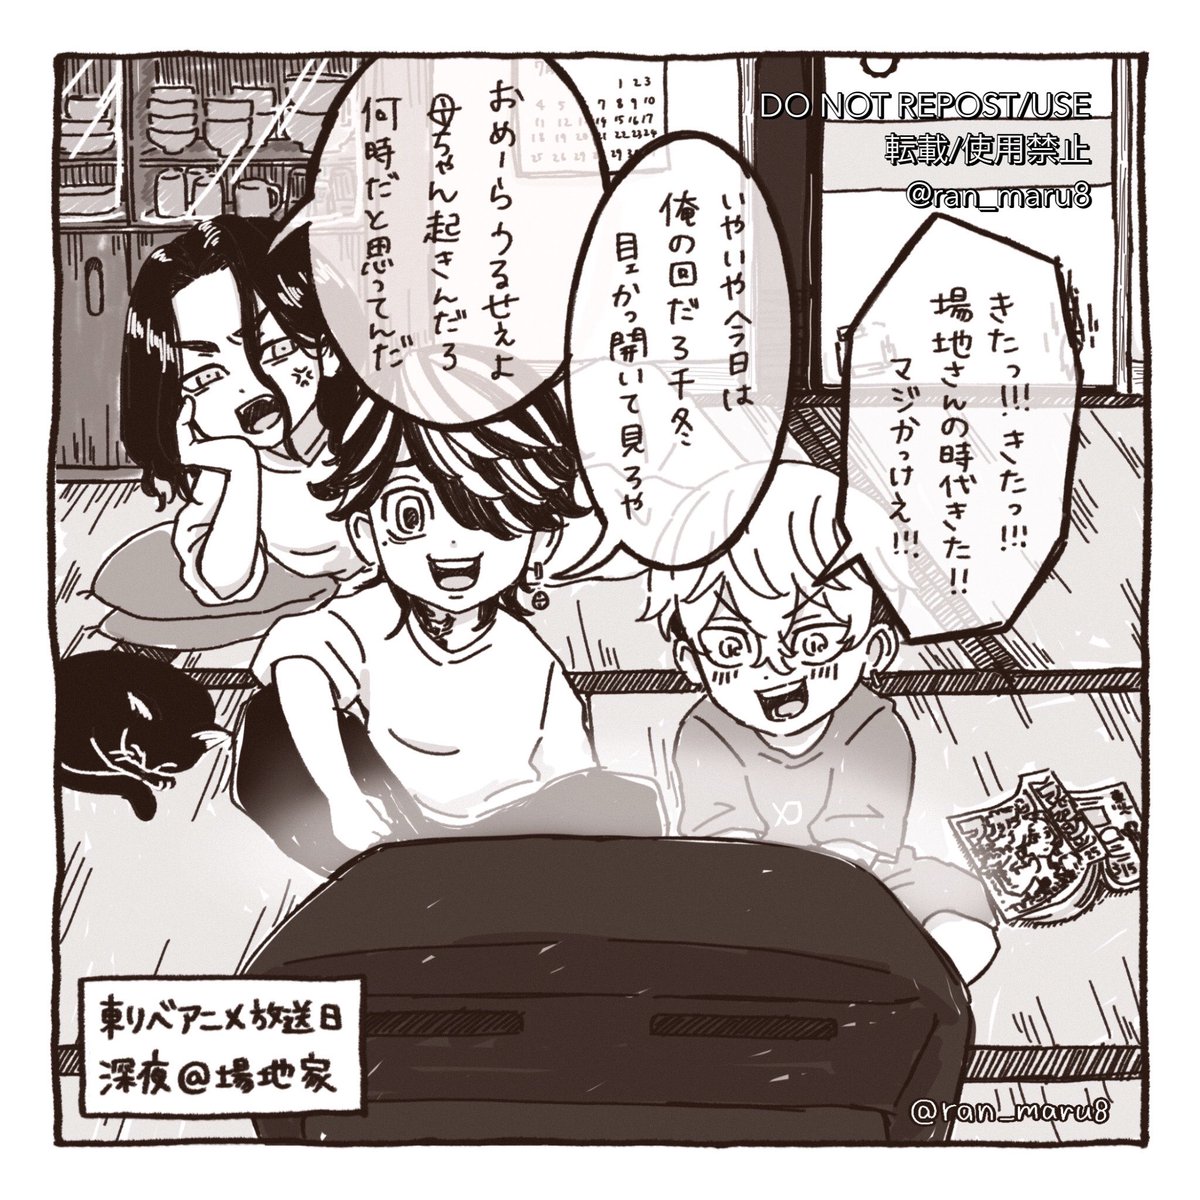 #東卍FA
アニメ15話放送時に描いたバジトリオ 